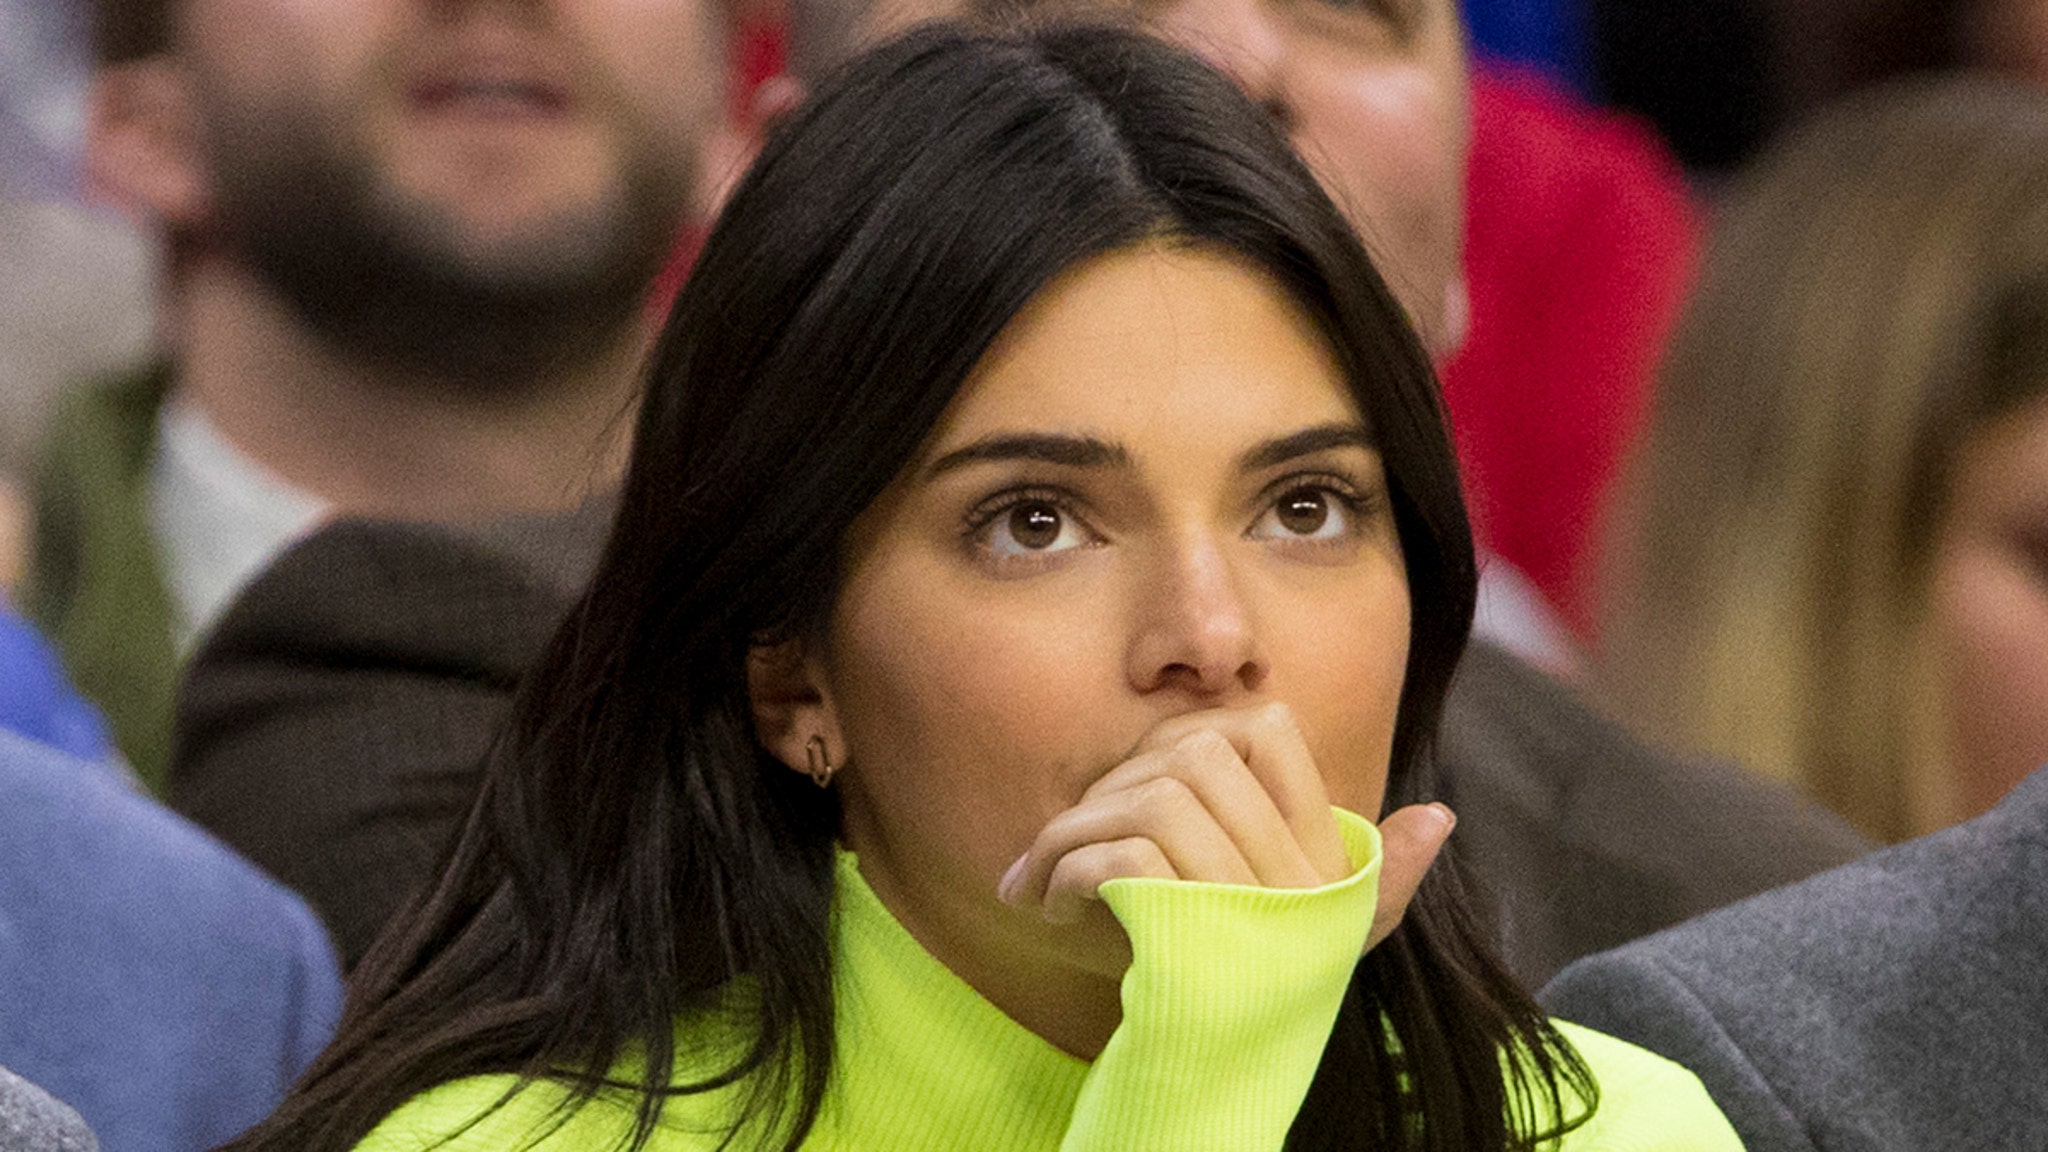 Kendall Jenner demandó a Liu Joel por $ 1.8 millones y fue liberada bajo fianza en una sesión de fotos.